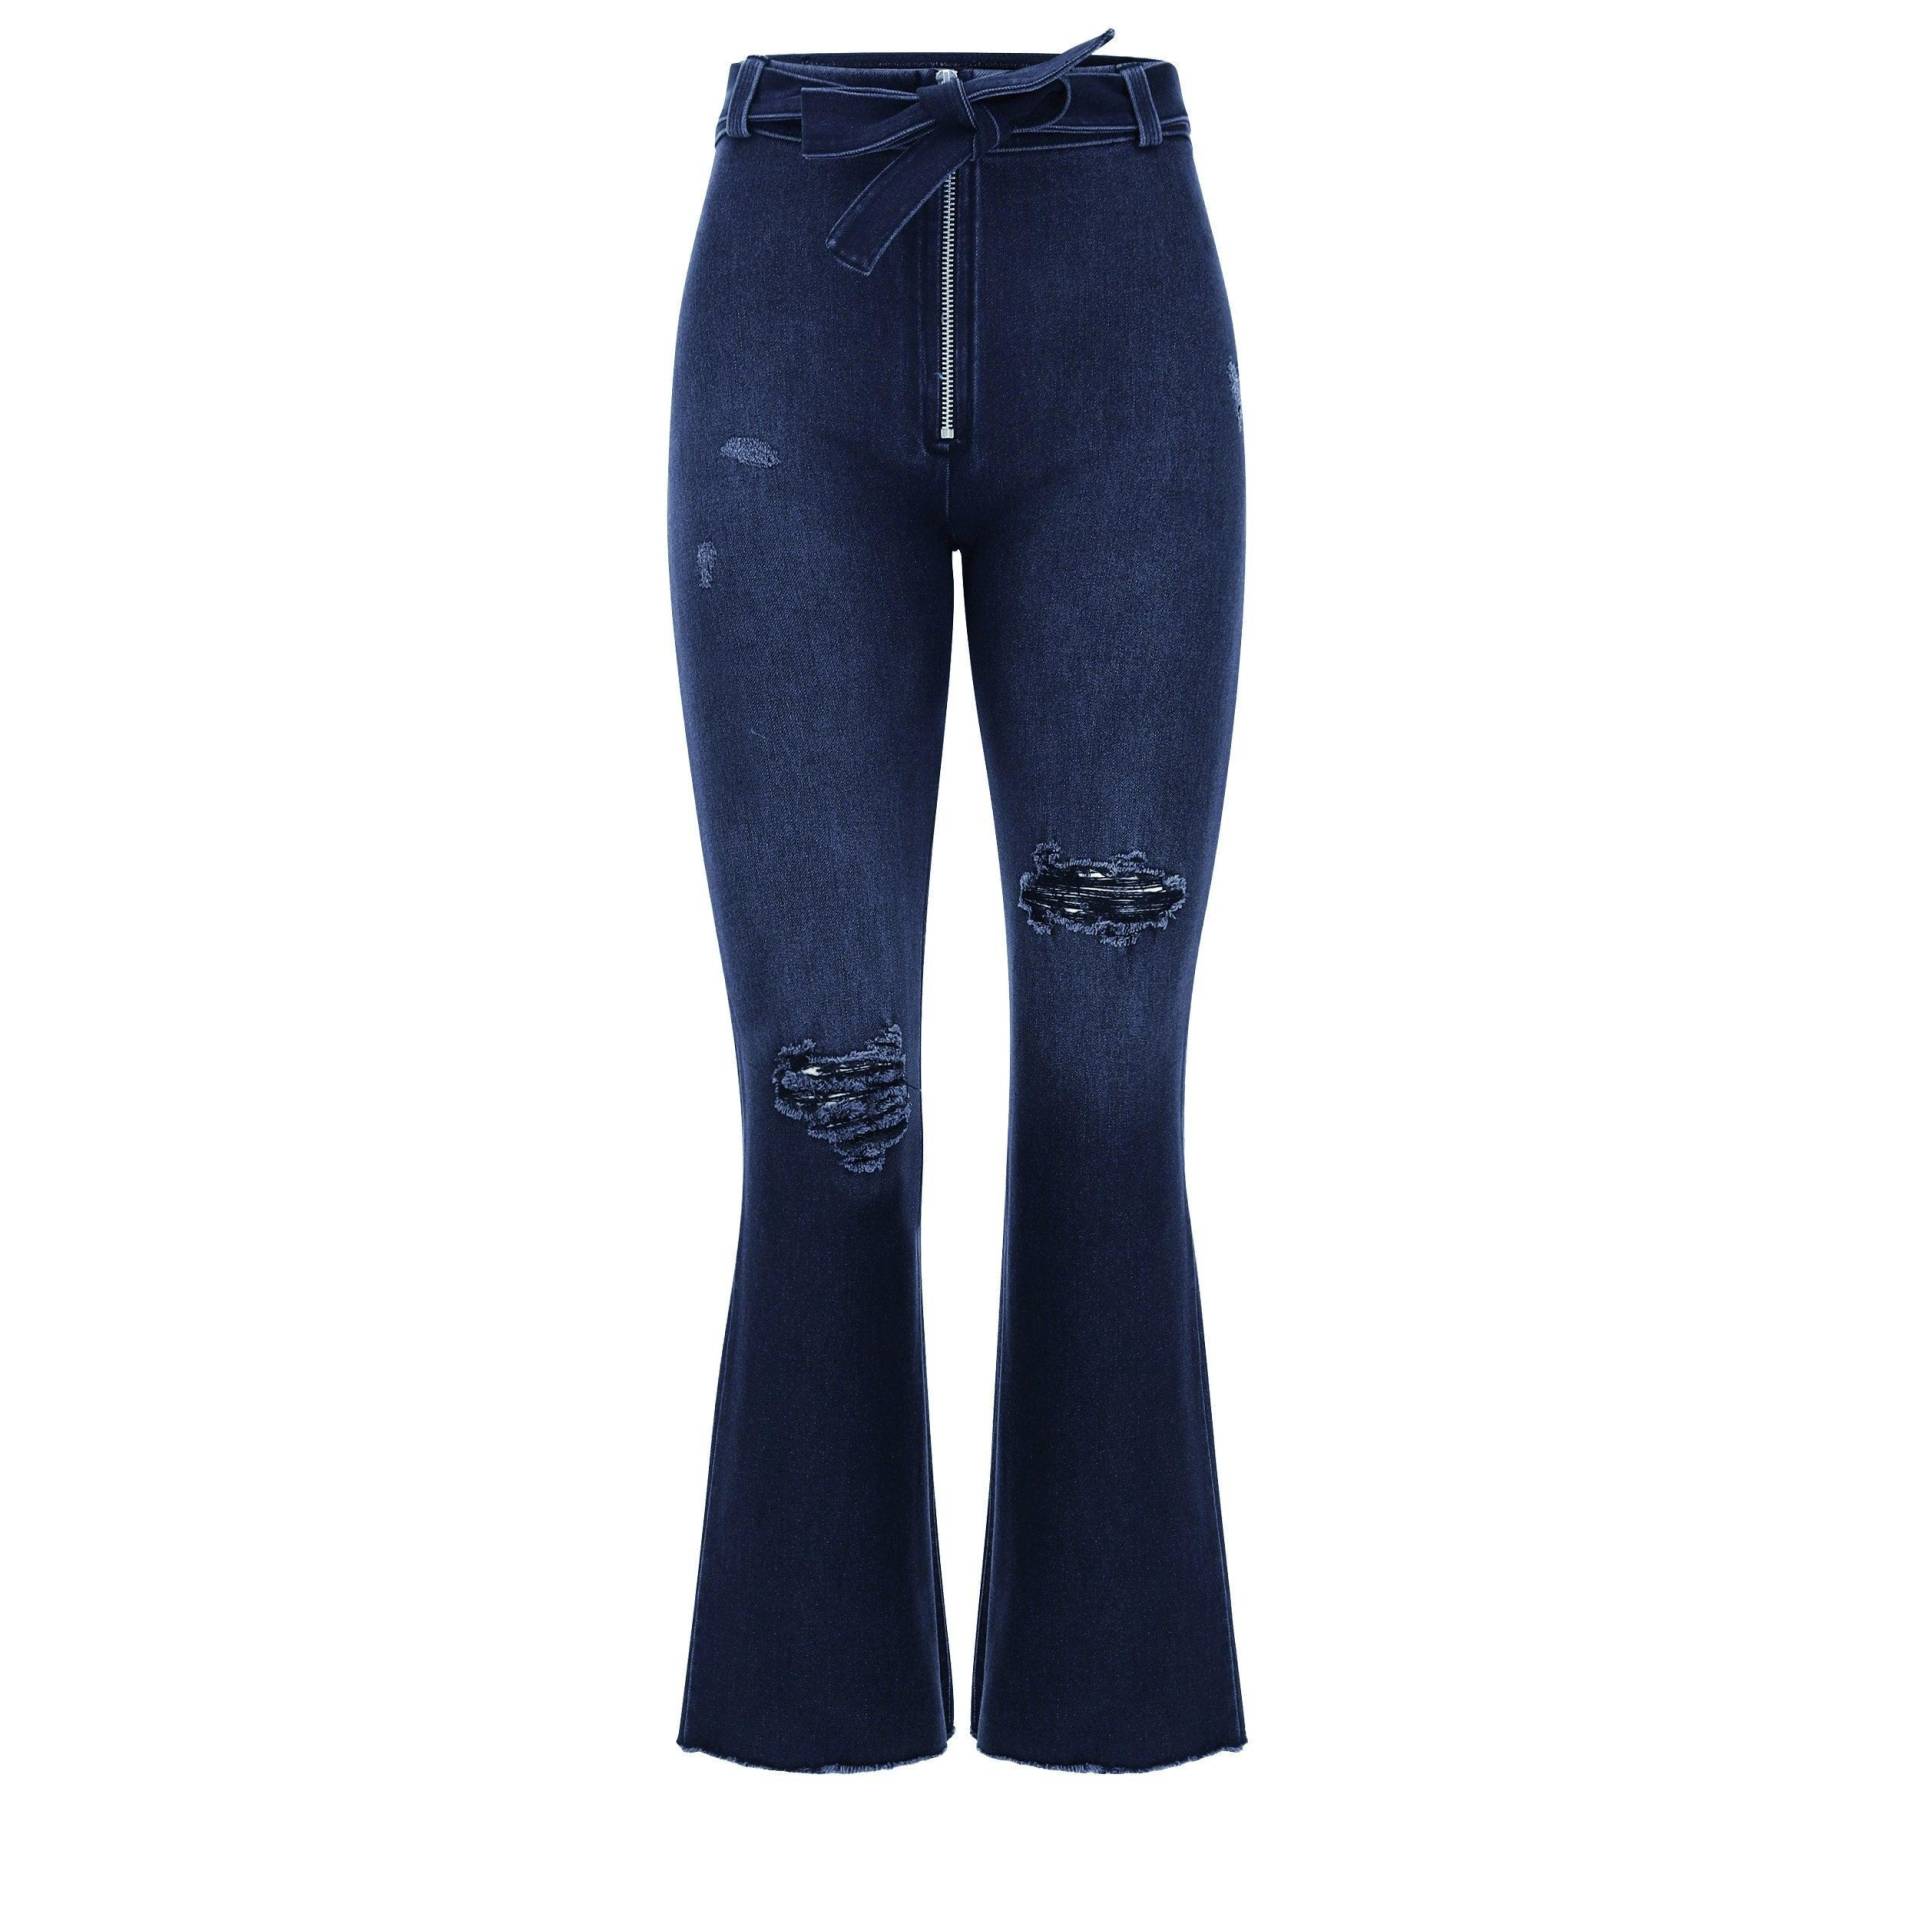 Wr.up® Snug Shaping Pants 7/8 Damen Blau Denim Dunkel S von FREDDY